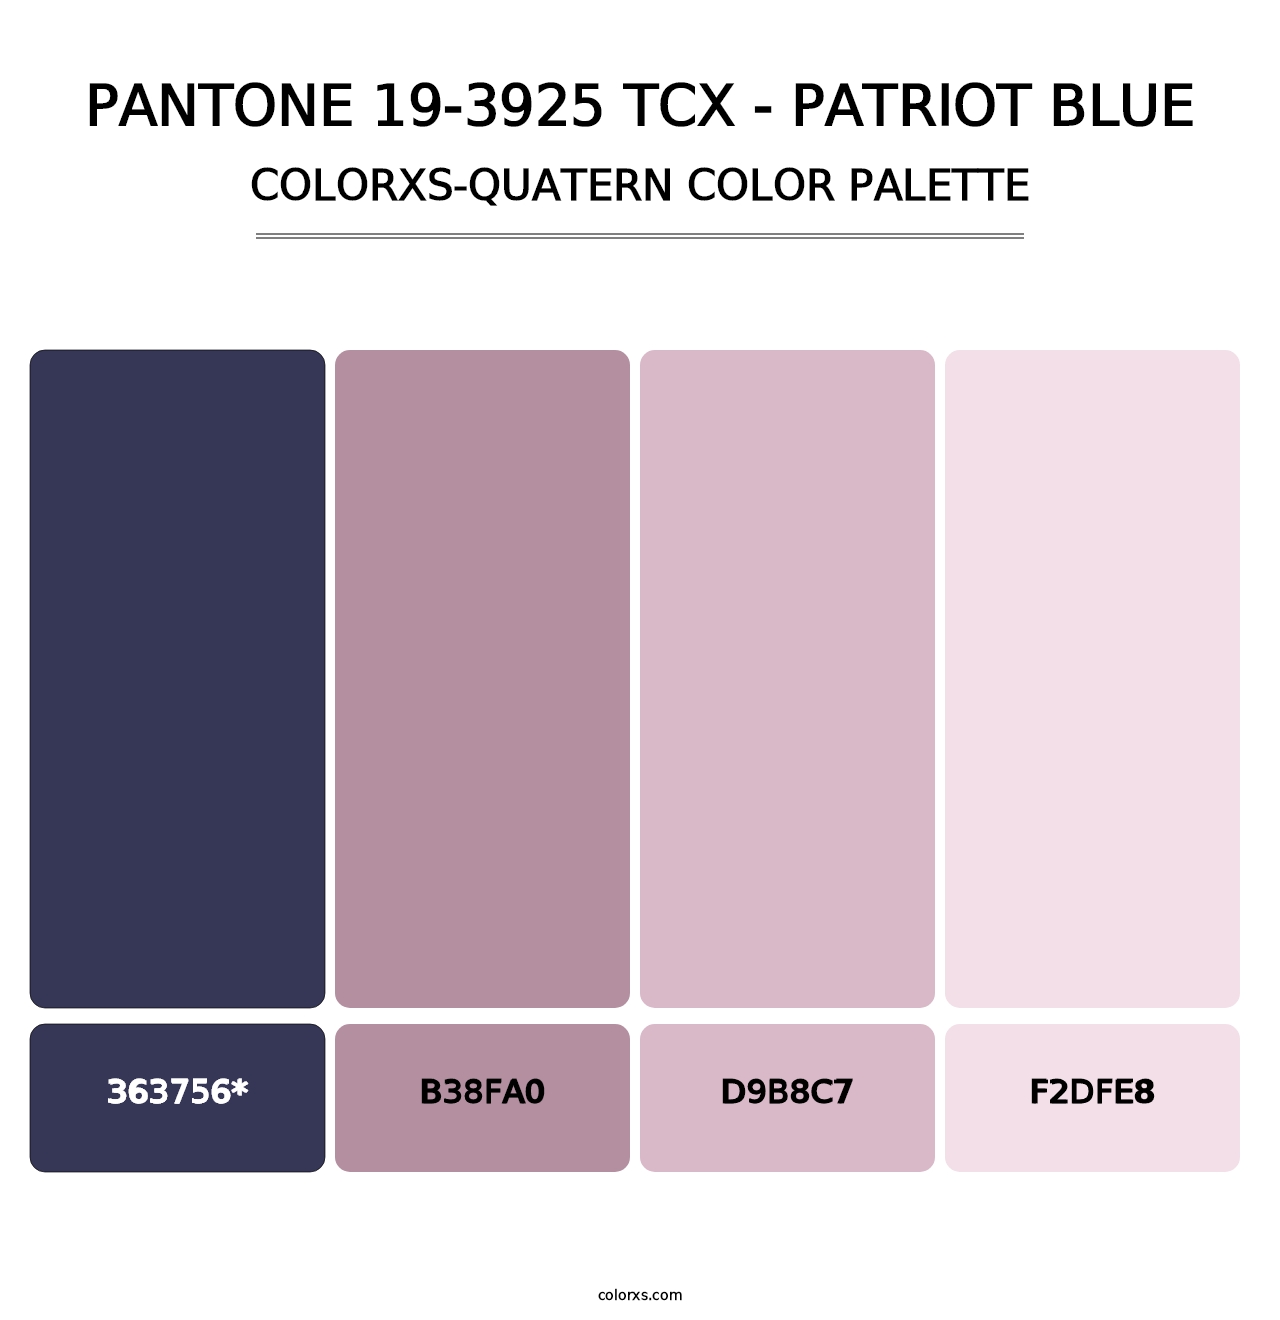 PANTONE 19-3925 TCX - Patriot Blue - Colorxs Quatern Palette